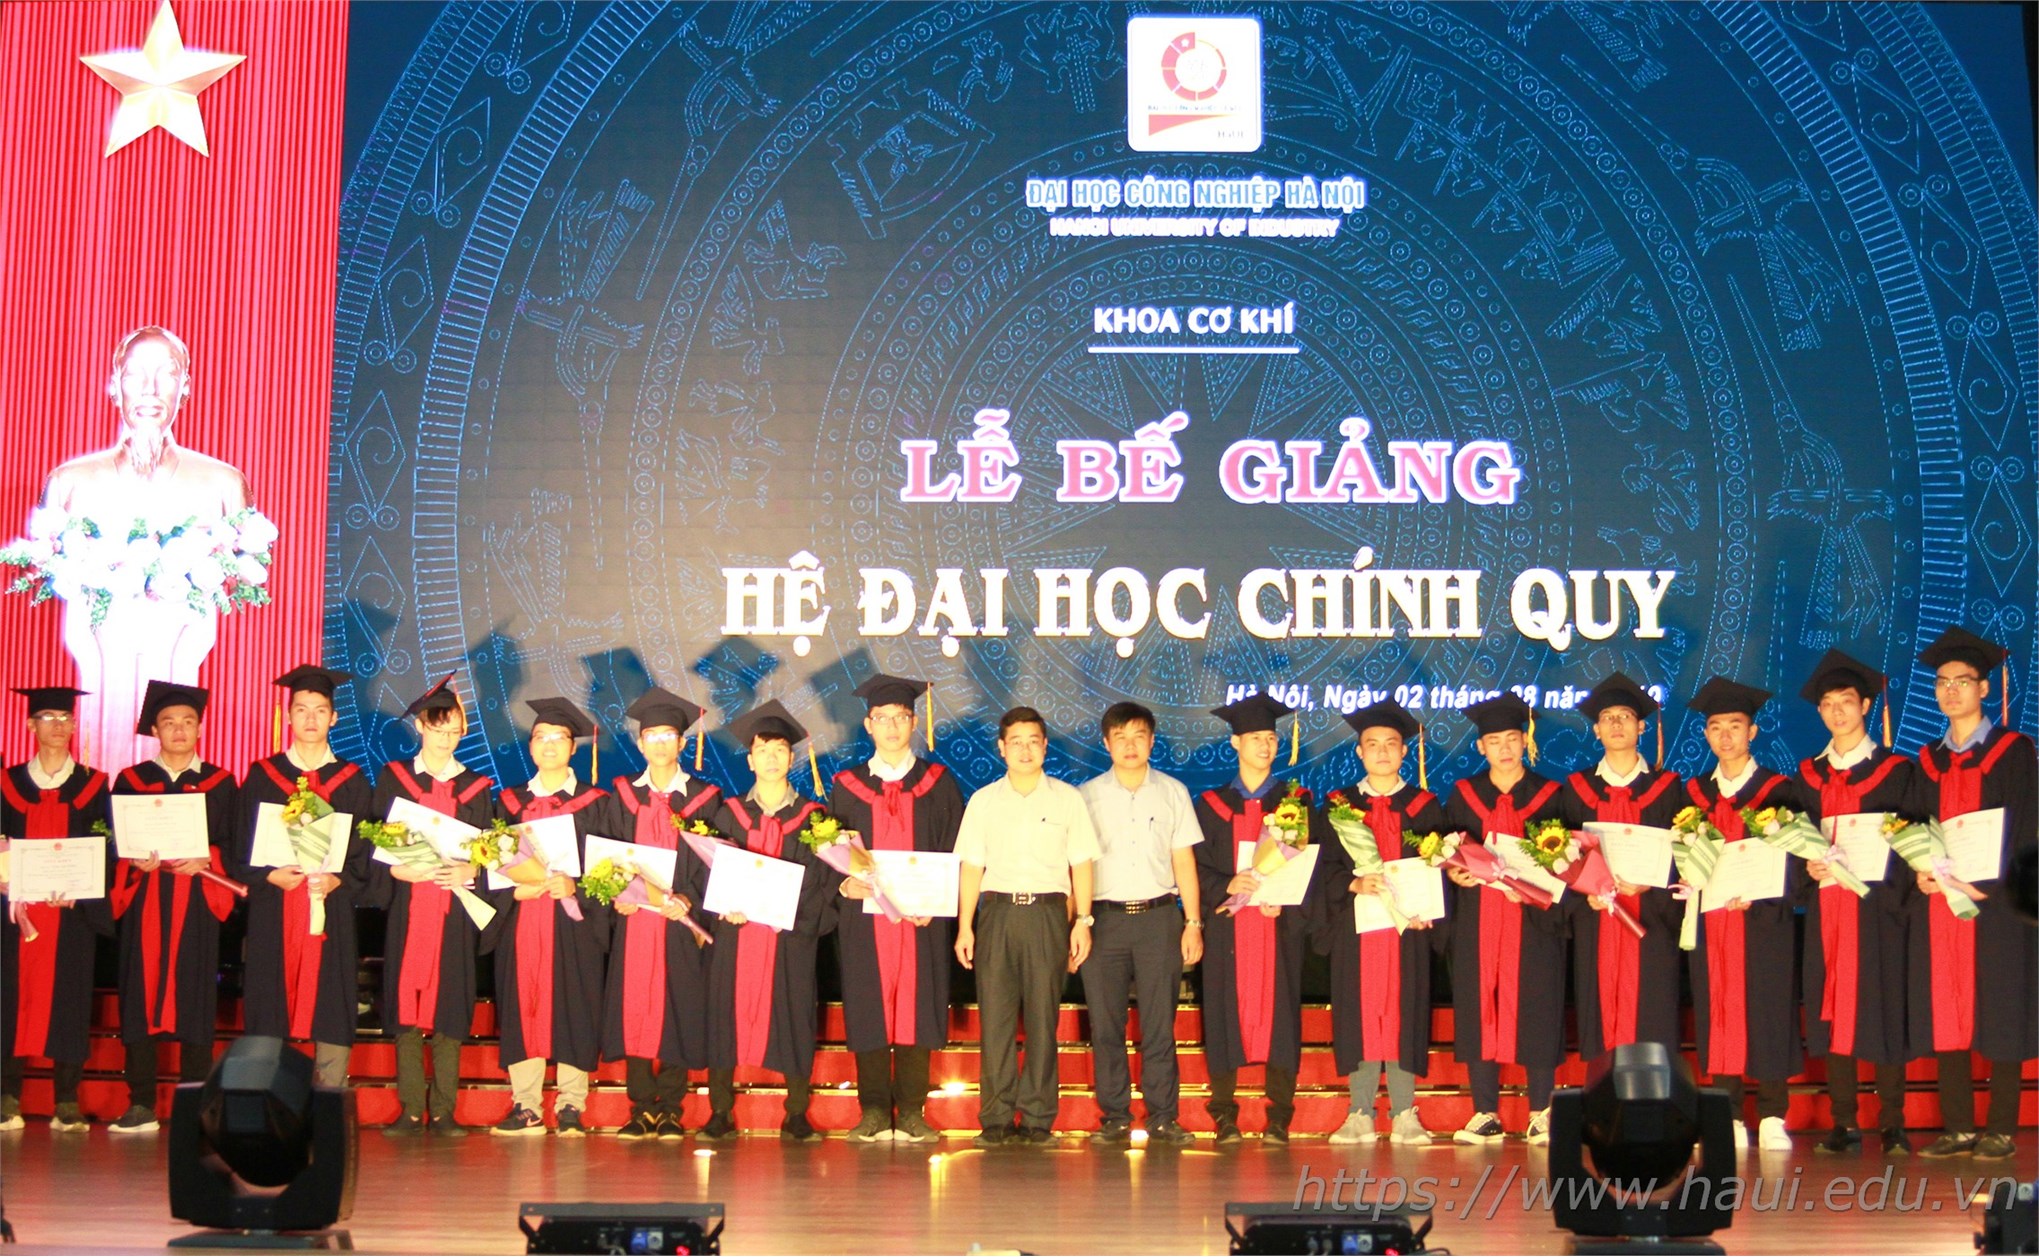 Lễ Bế giảng và trao bằng tốt nghiệp cử nhân trường Đại học Công nghiệp Hà Nội